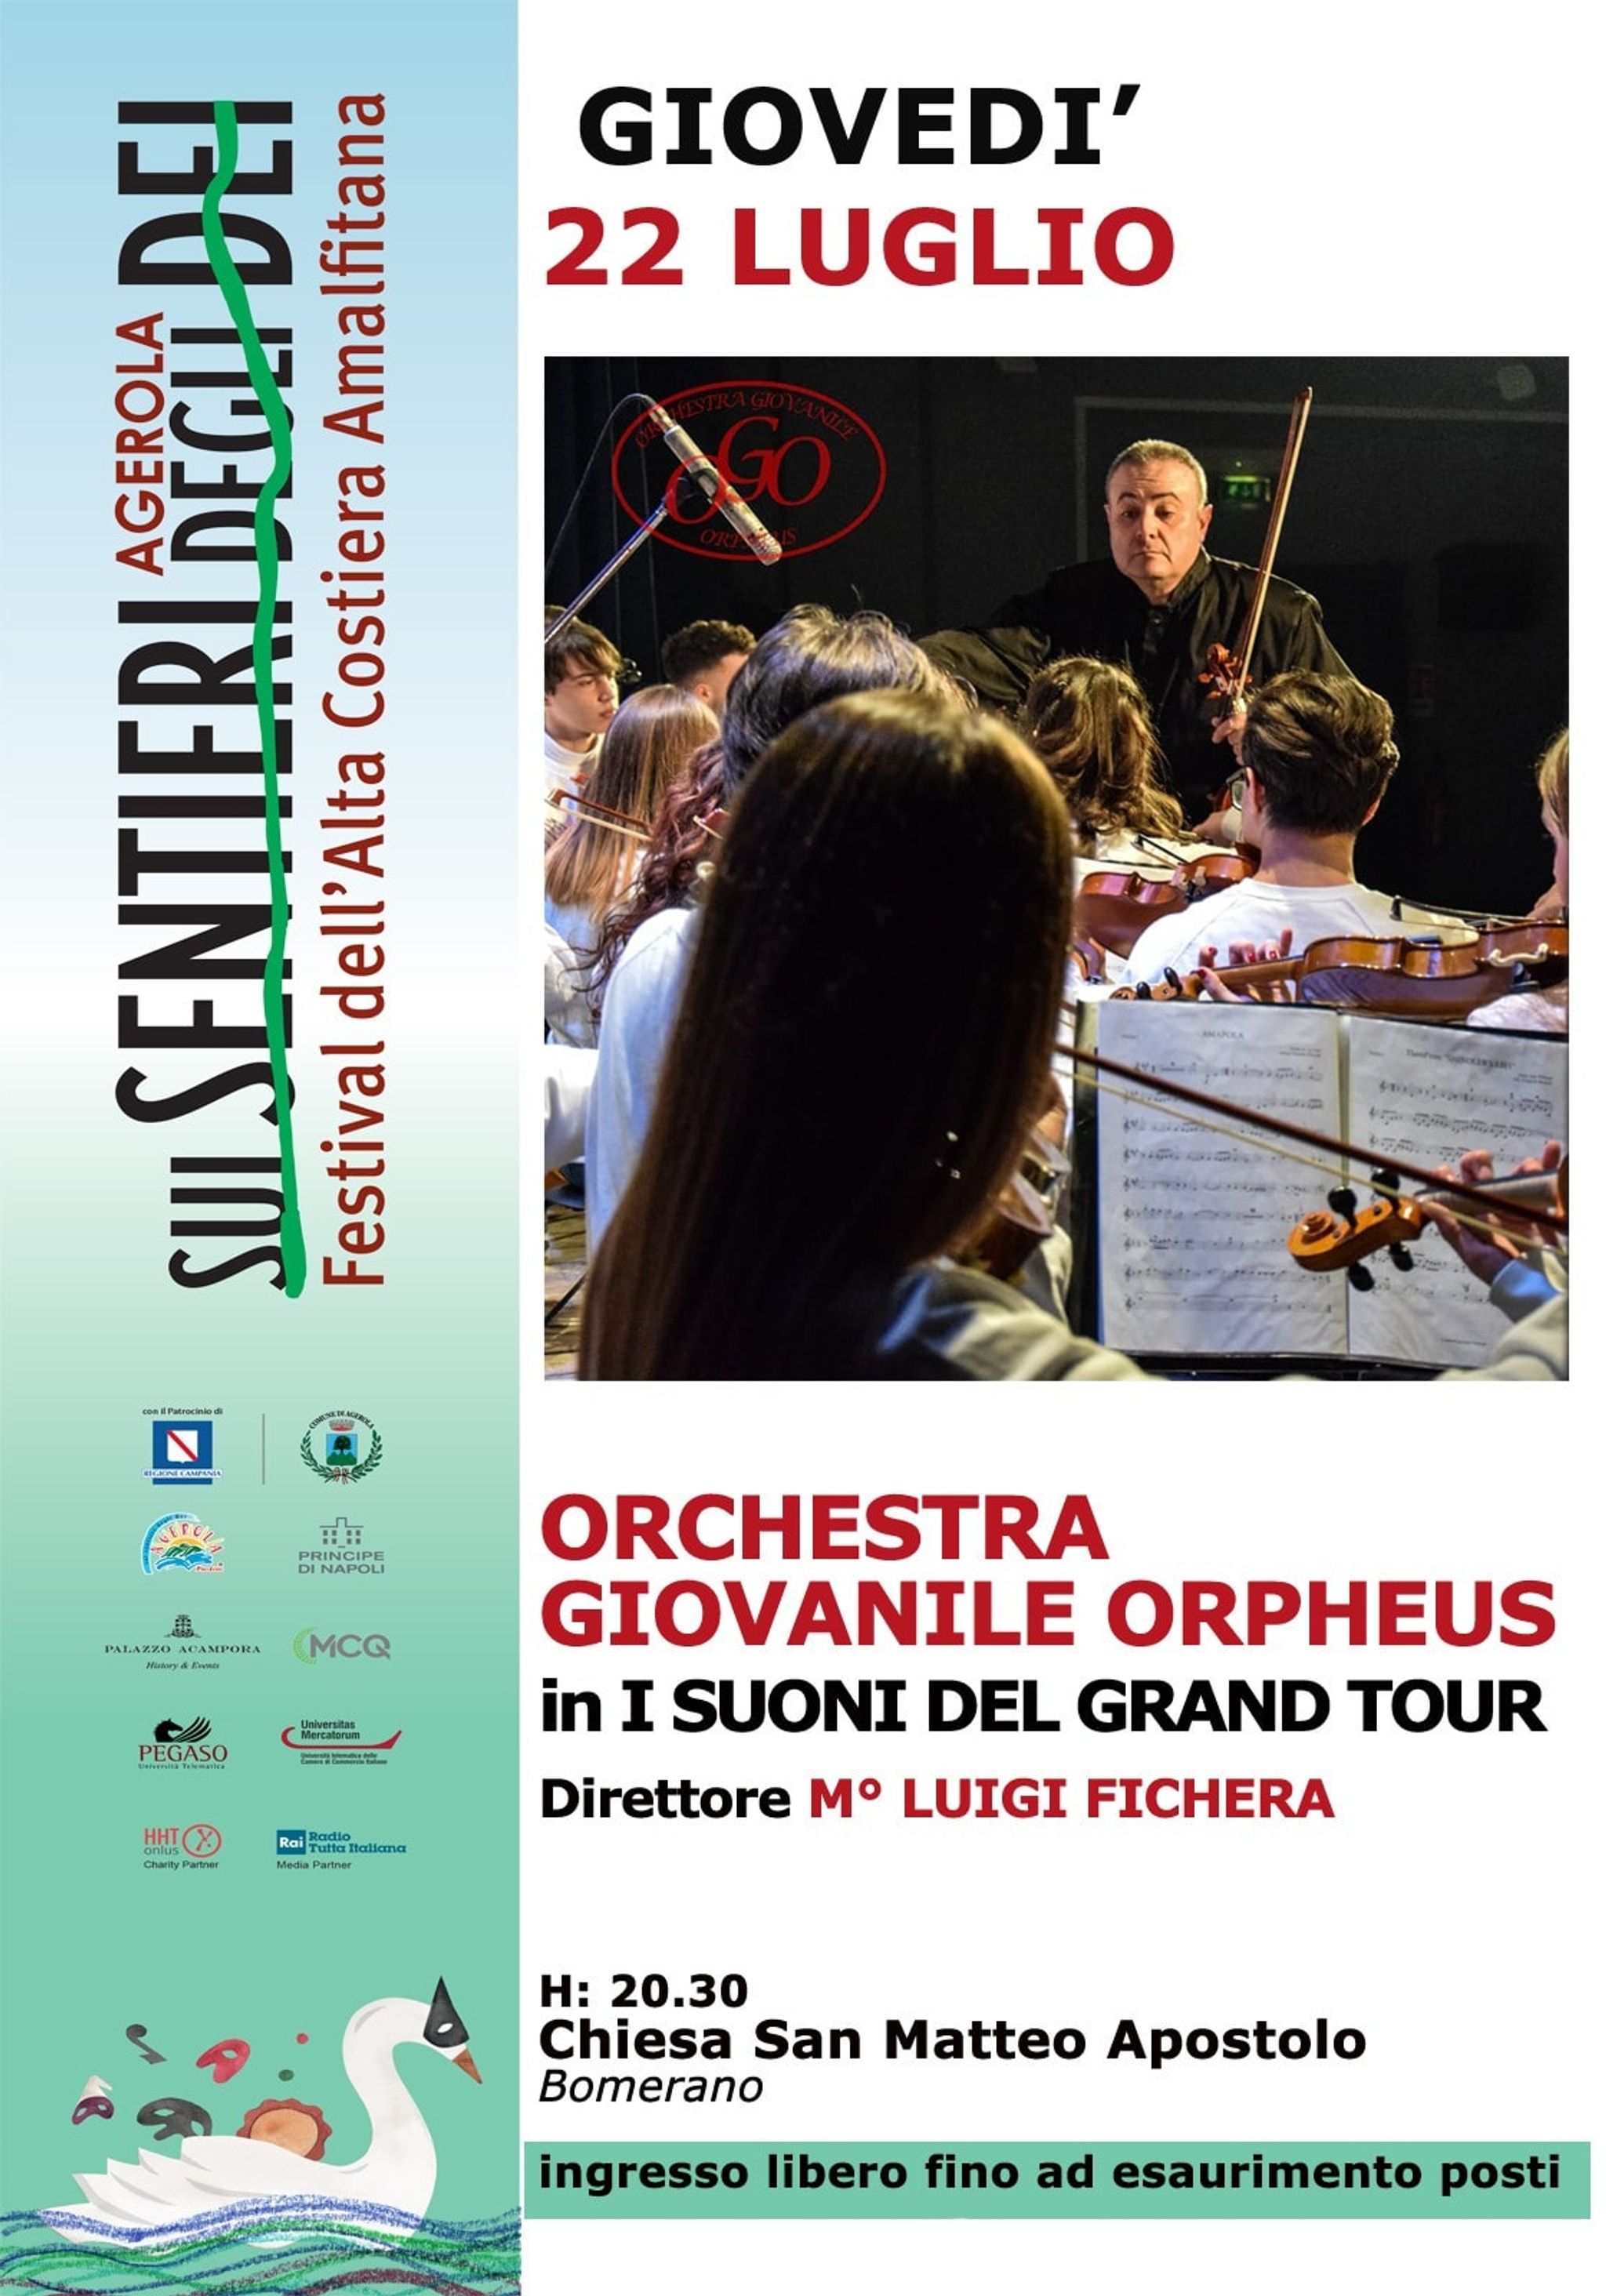 Orchestra Giovanile Orpheus in I Suoni del Grand Tour